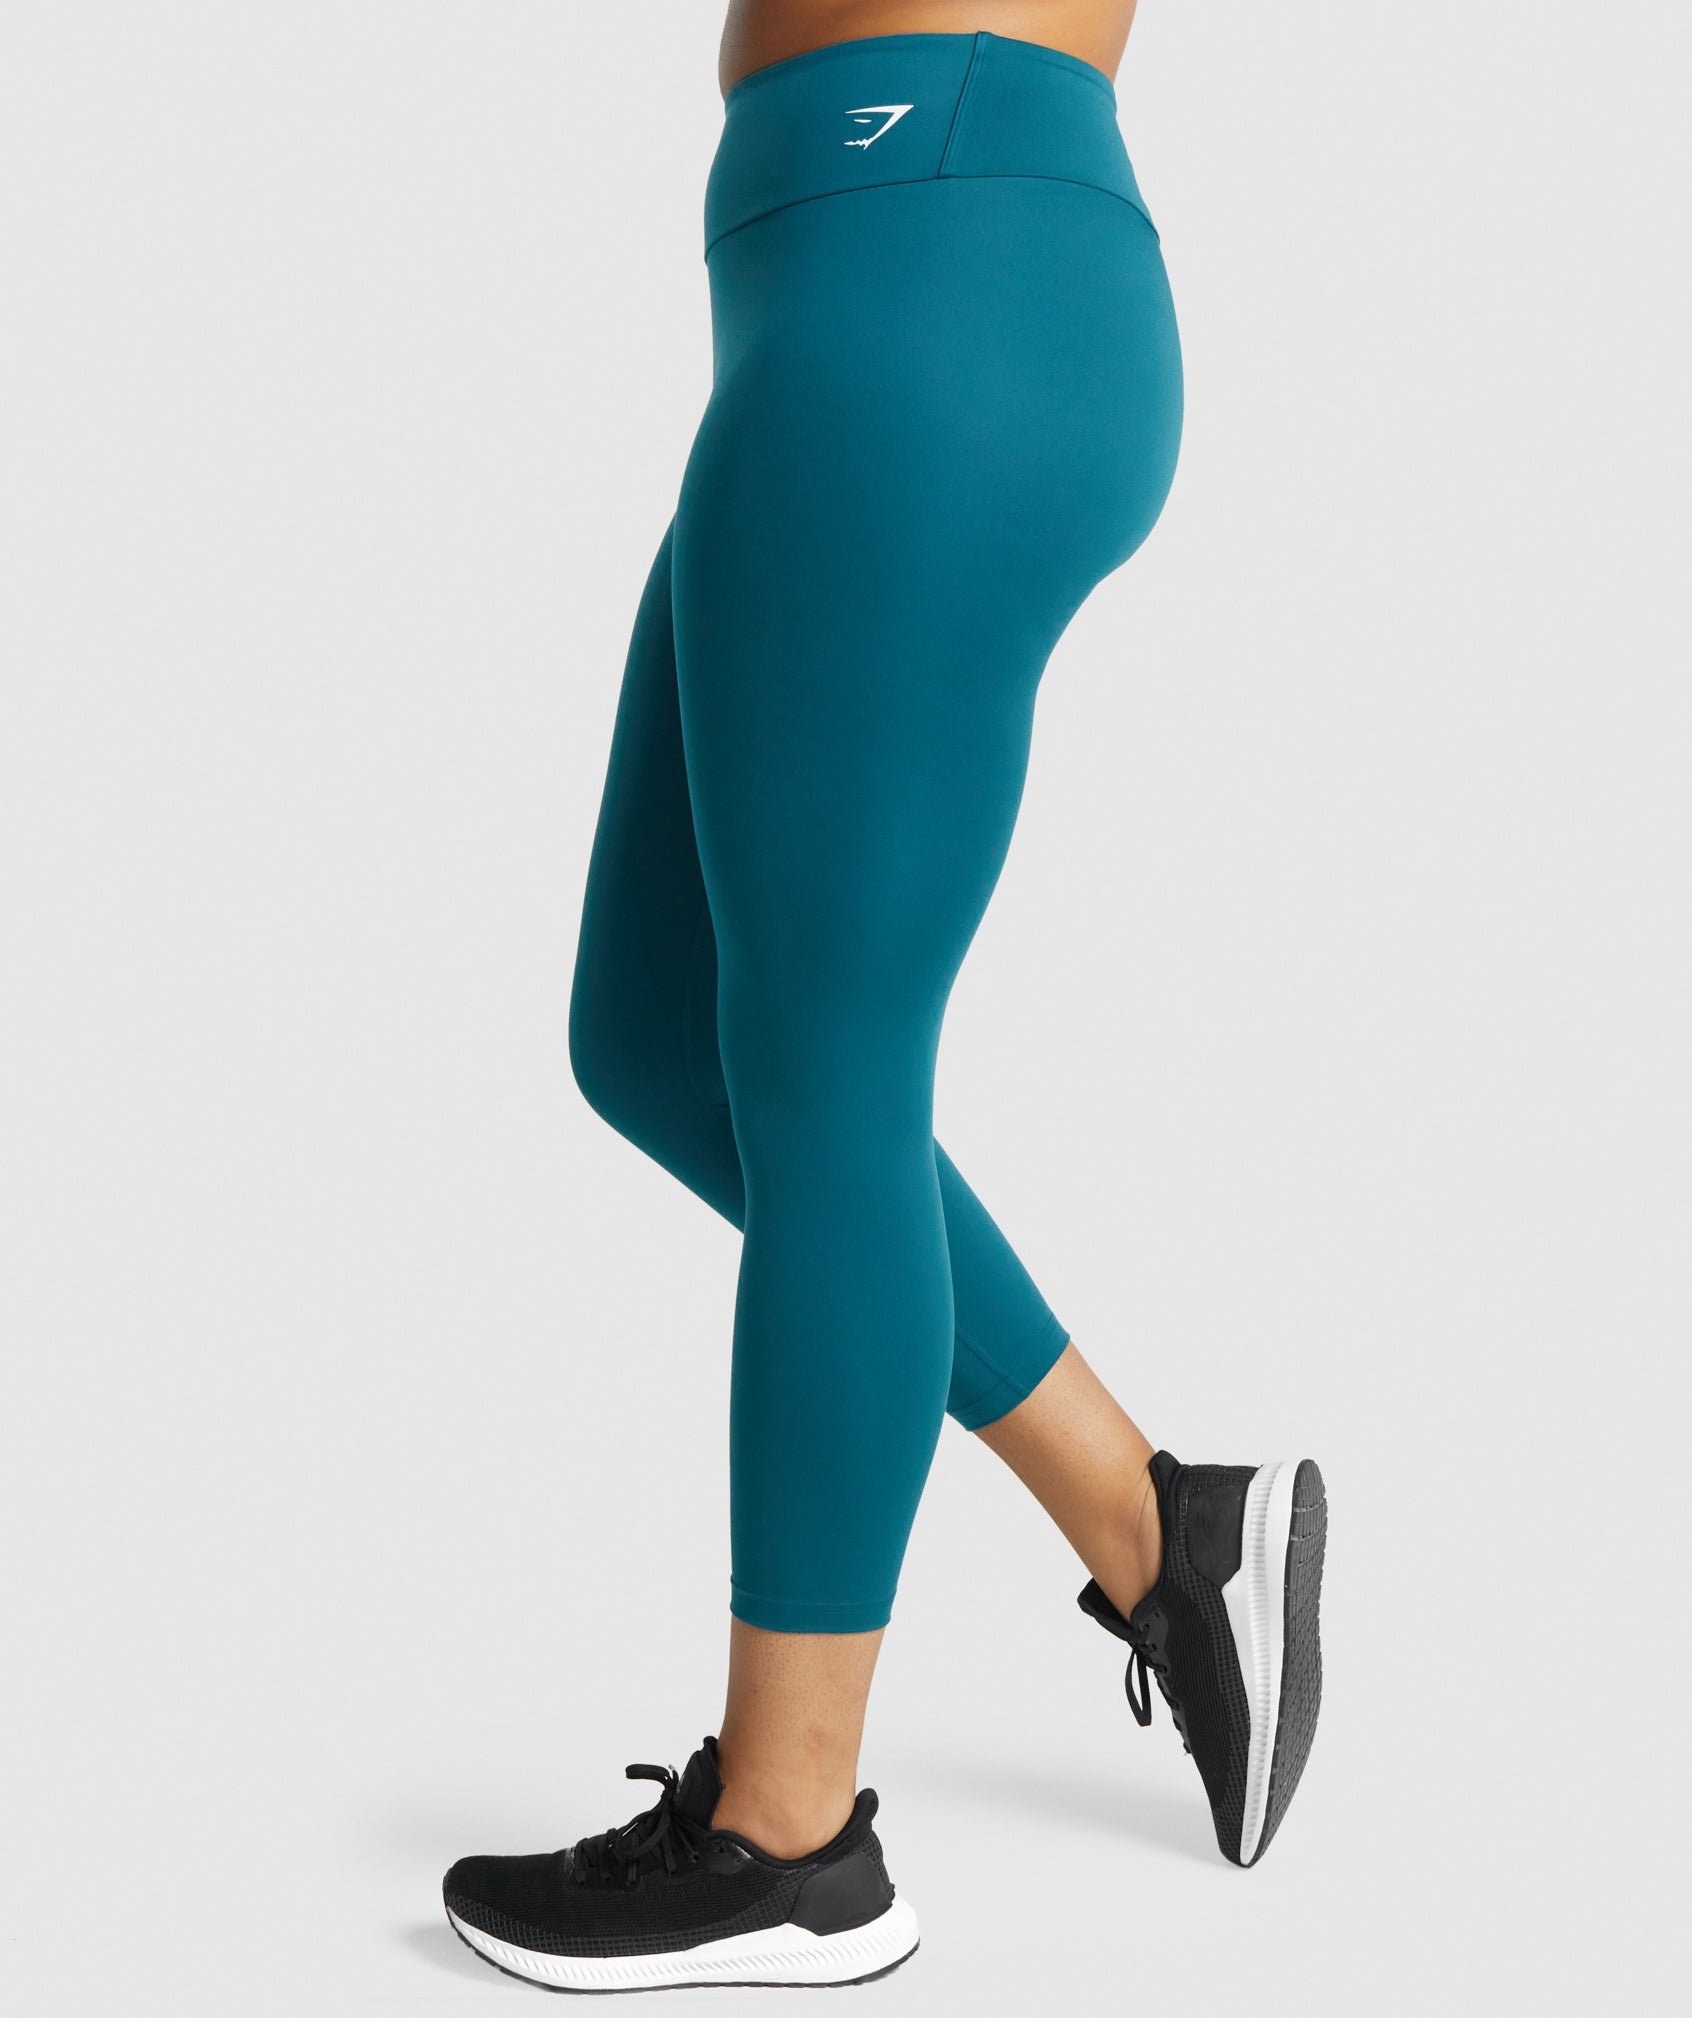 Gymshark Waist Support Leggings - Bright Turquoise Print